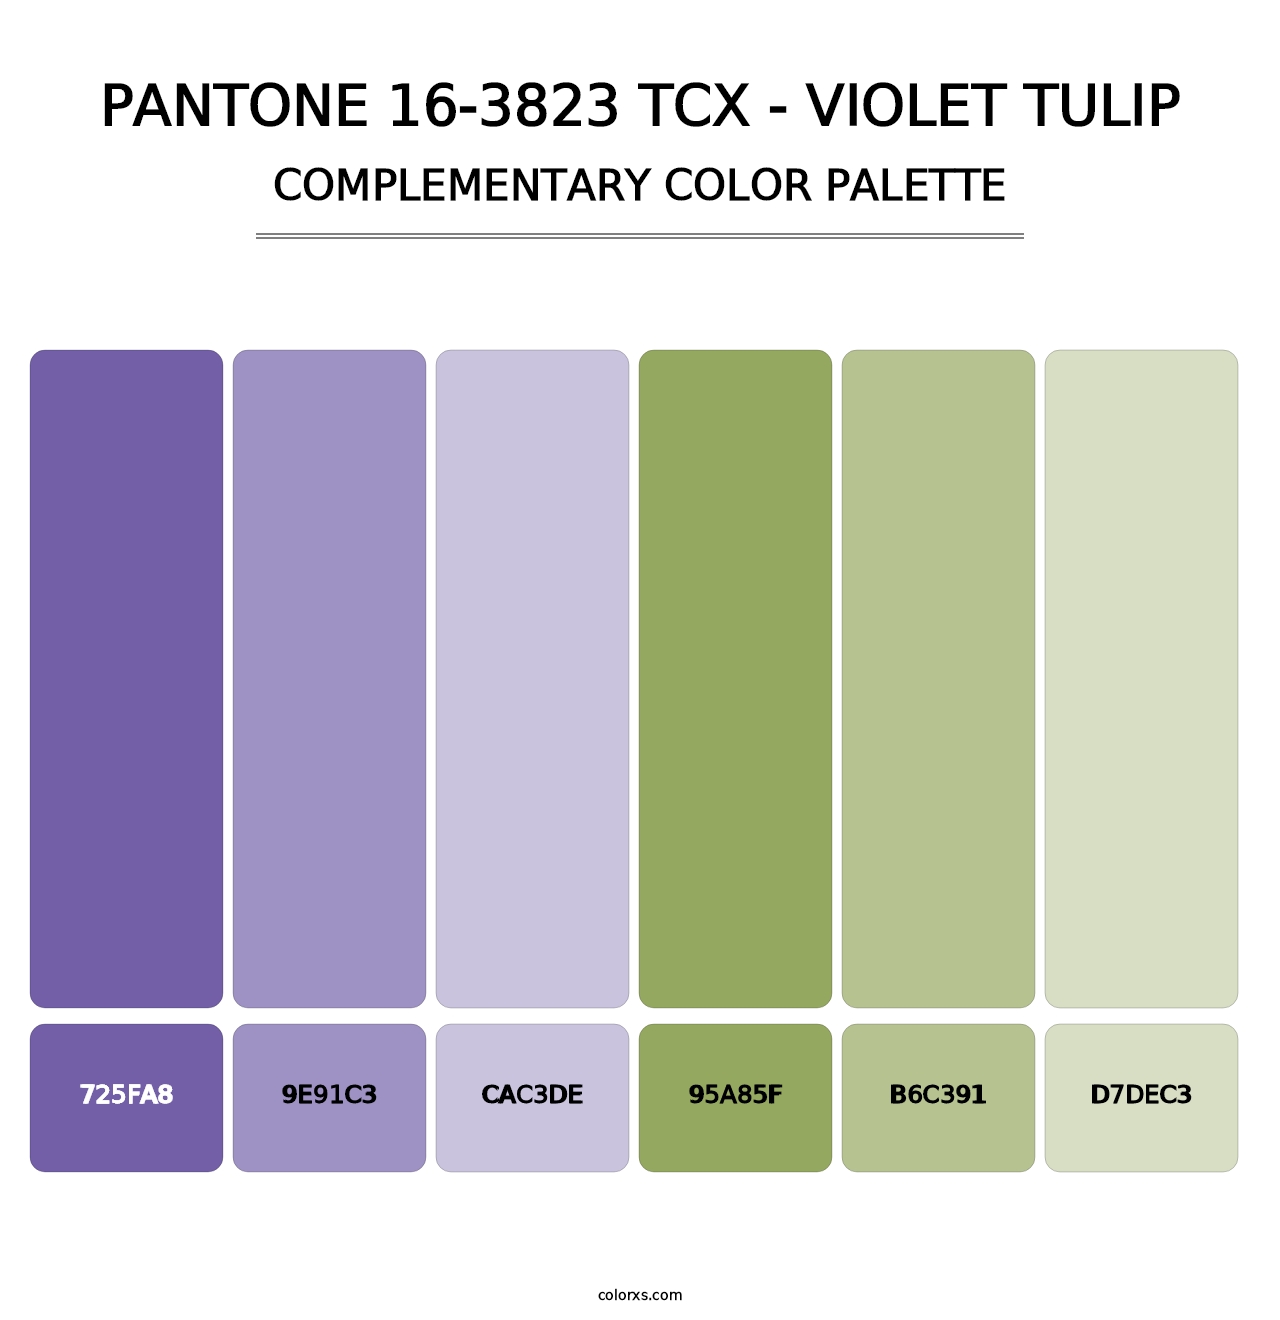 PANTONE 16-3823 TCX - Violet Tulip - Complementary Color Palette